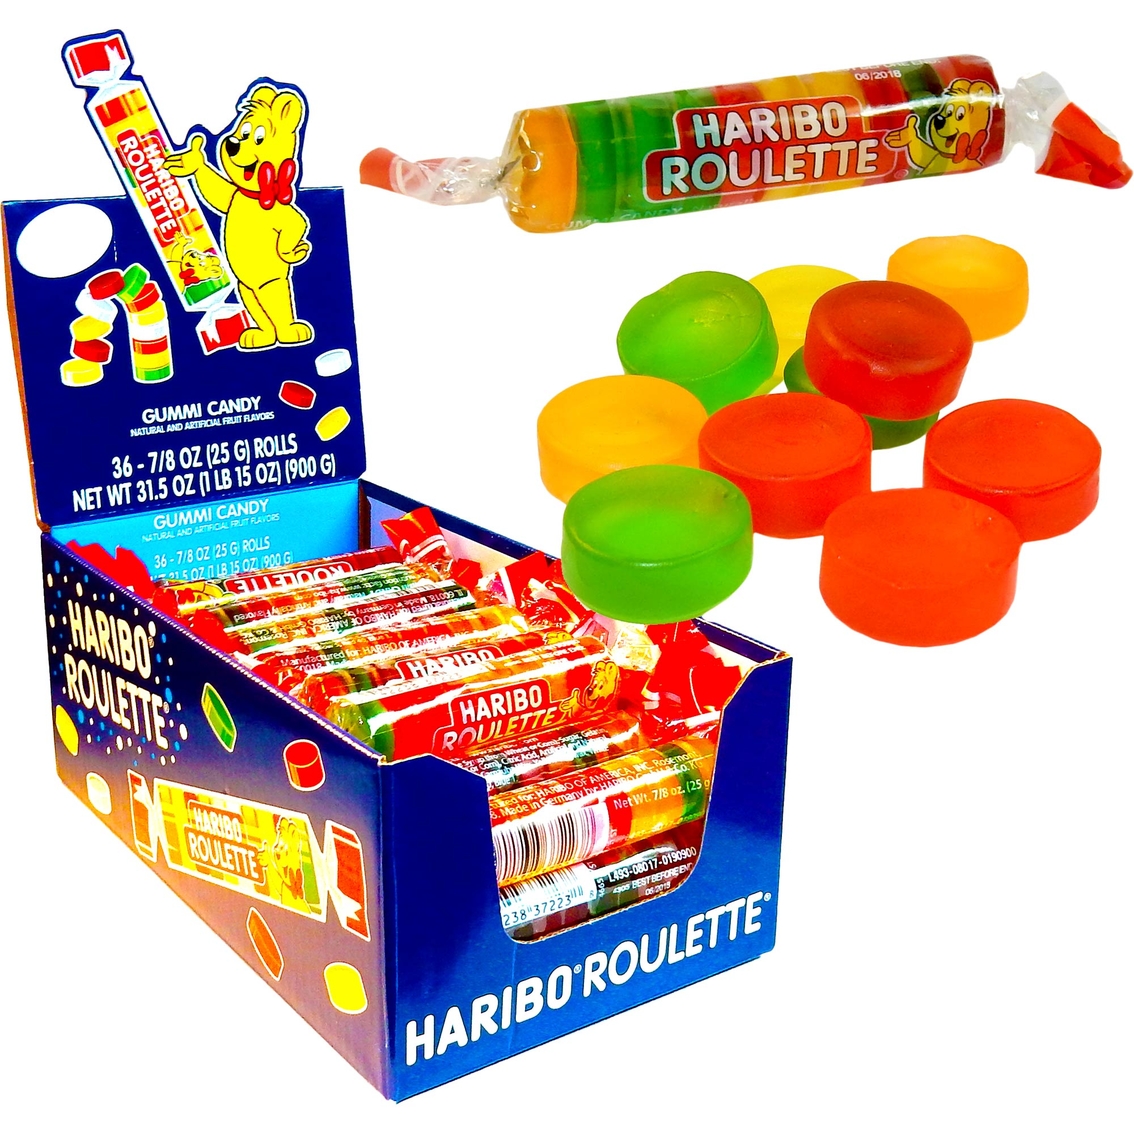 Haribo Roulette Gummi Candies 36 Count